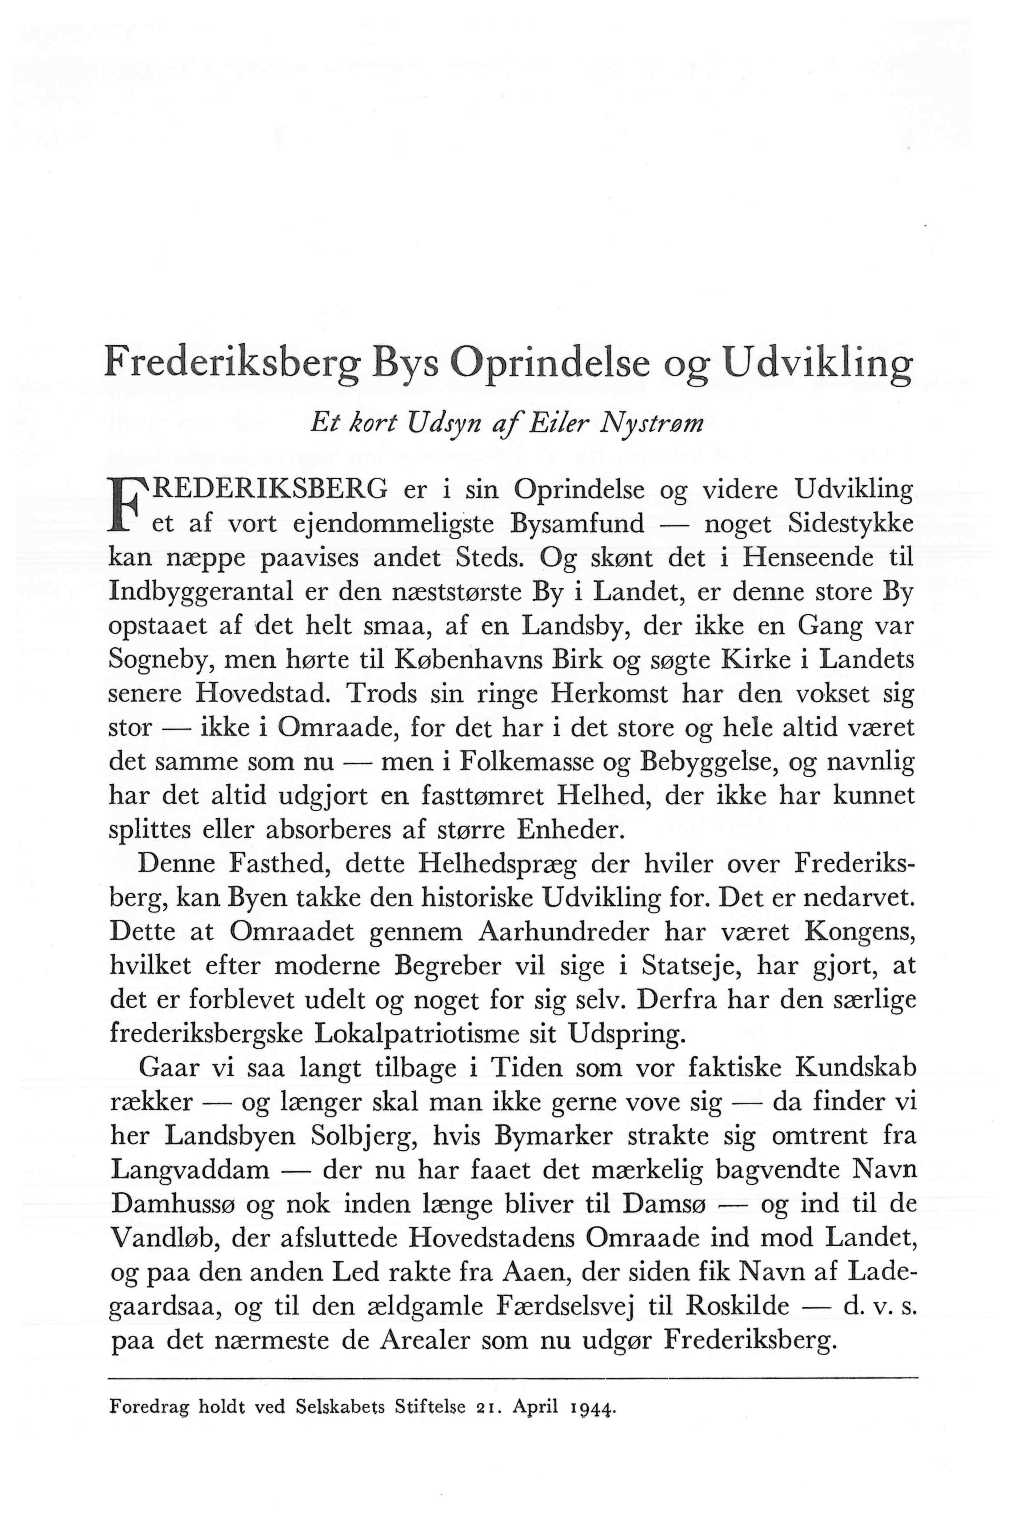 Eiler Nystrøm: Frederiksbergs Oprindelse Og Udvikling